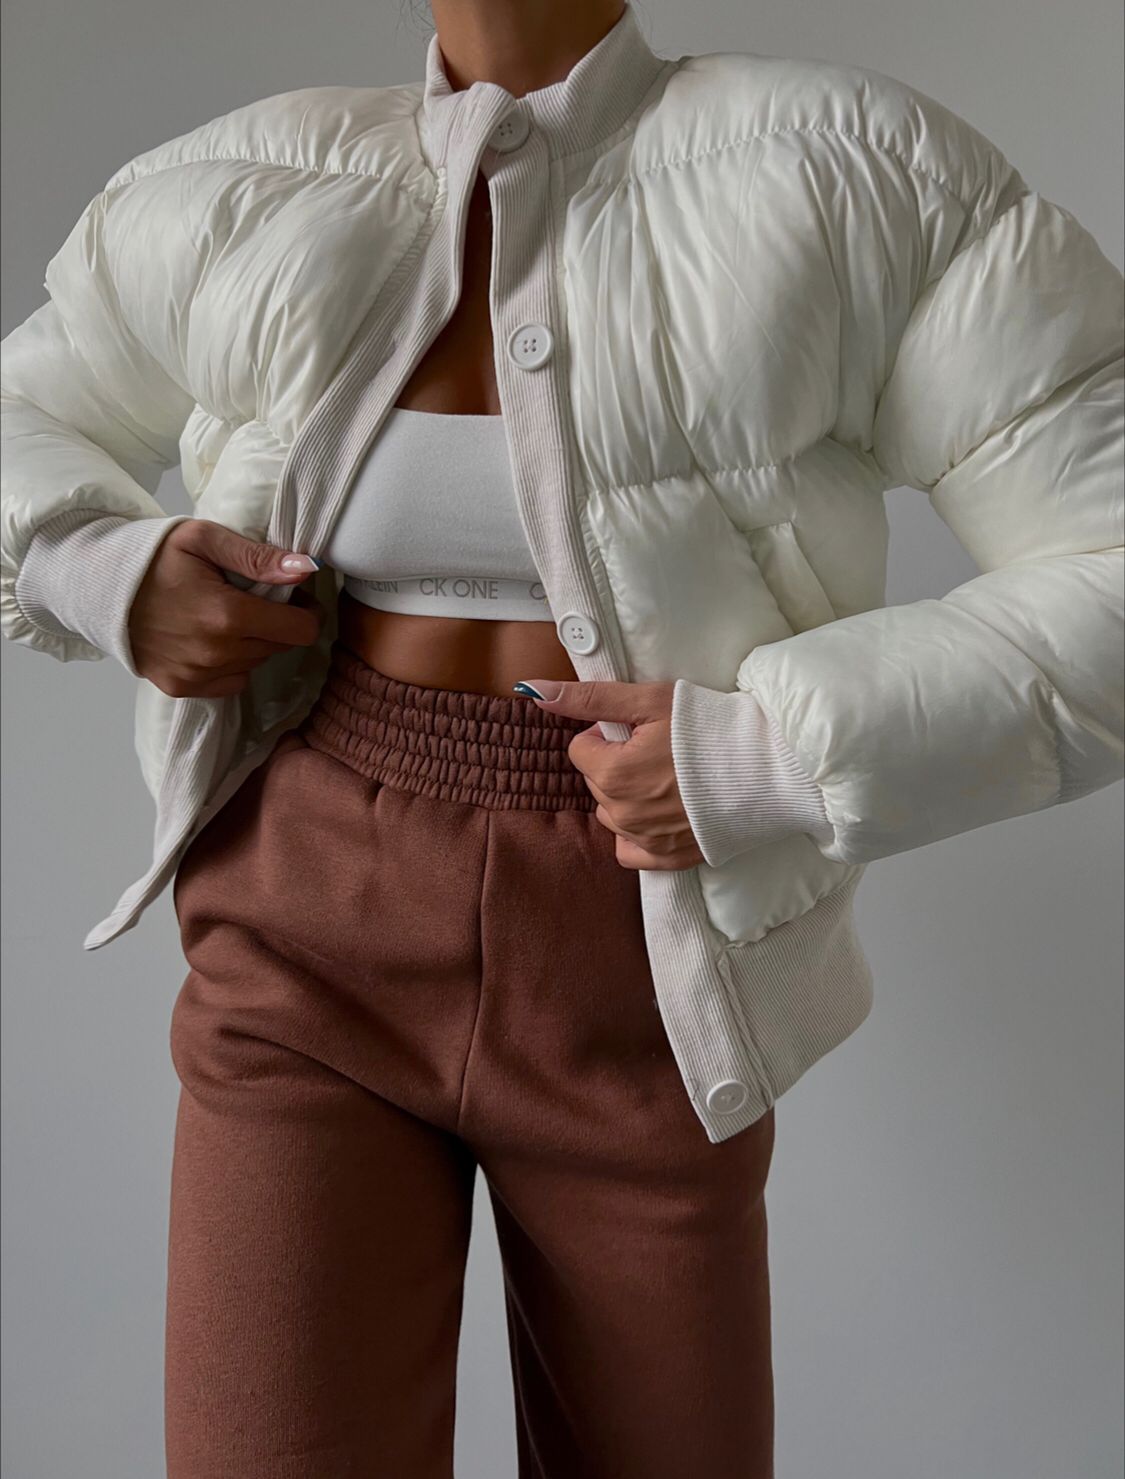 Дамско яке DARA  https://bvseductive.com/products/women-s-jackets-dara-2  модерно дамско яке в бял цвят изработено от мека, топла и приятна материя кройка с дължина до кръста и ръкави с ластик в края супер предложение за Вашата визия в студените дни чудесен избор за гардероба на всяка модерна дама